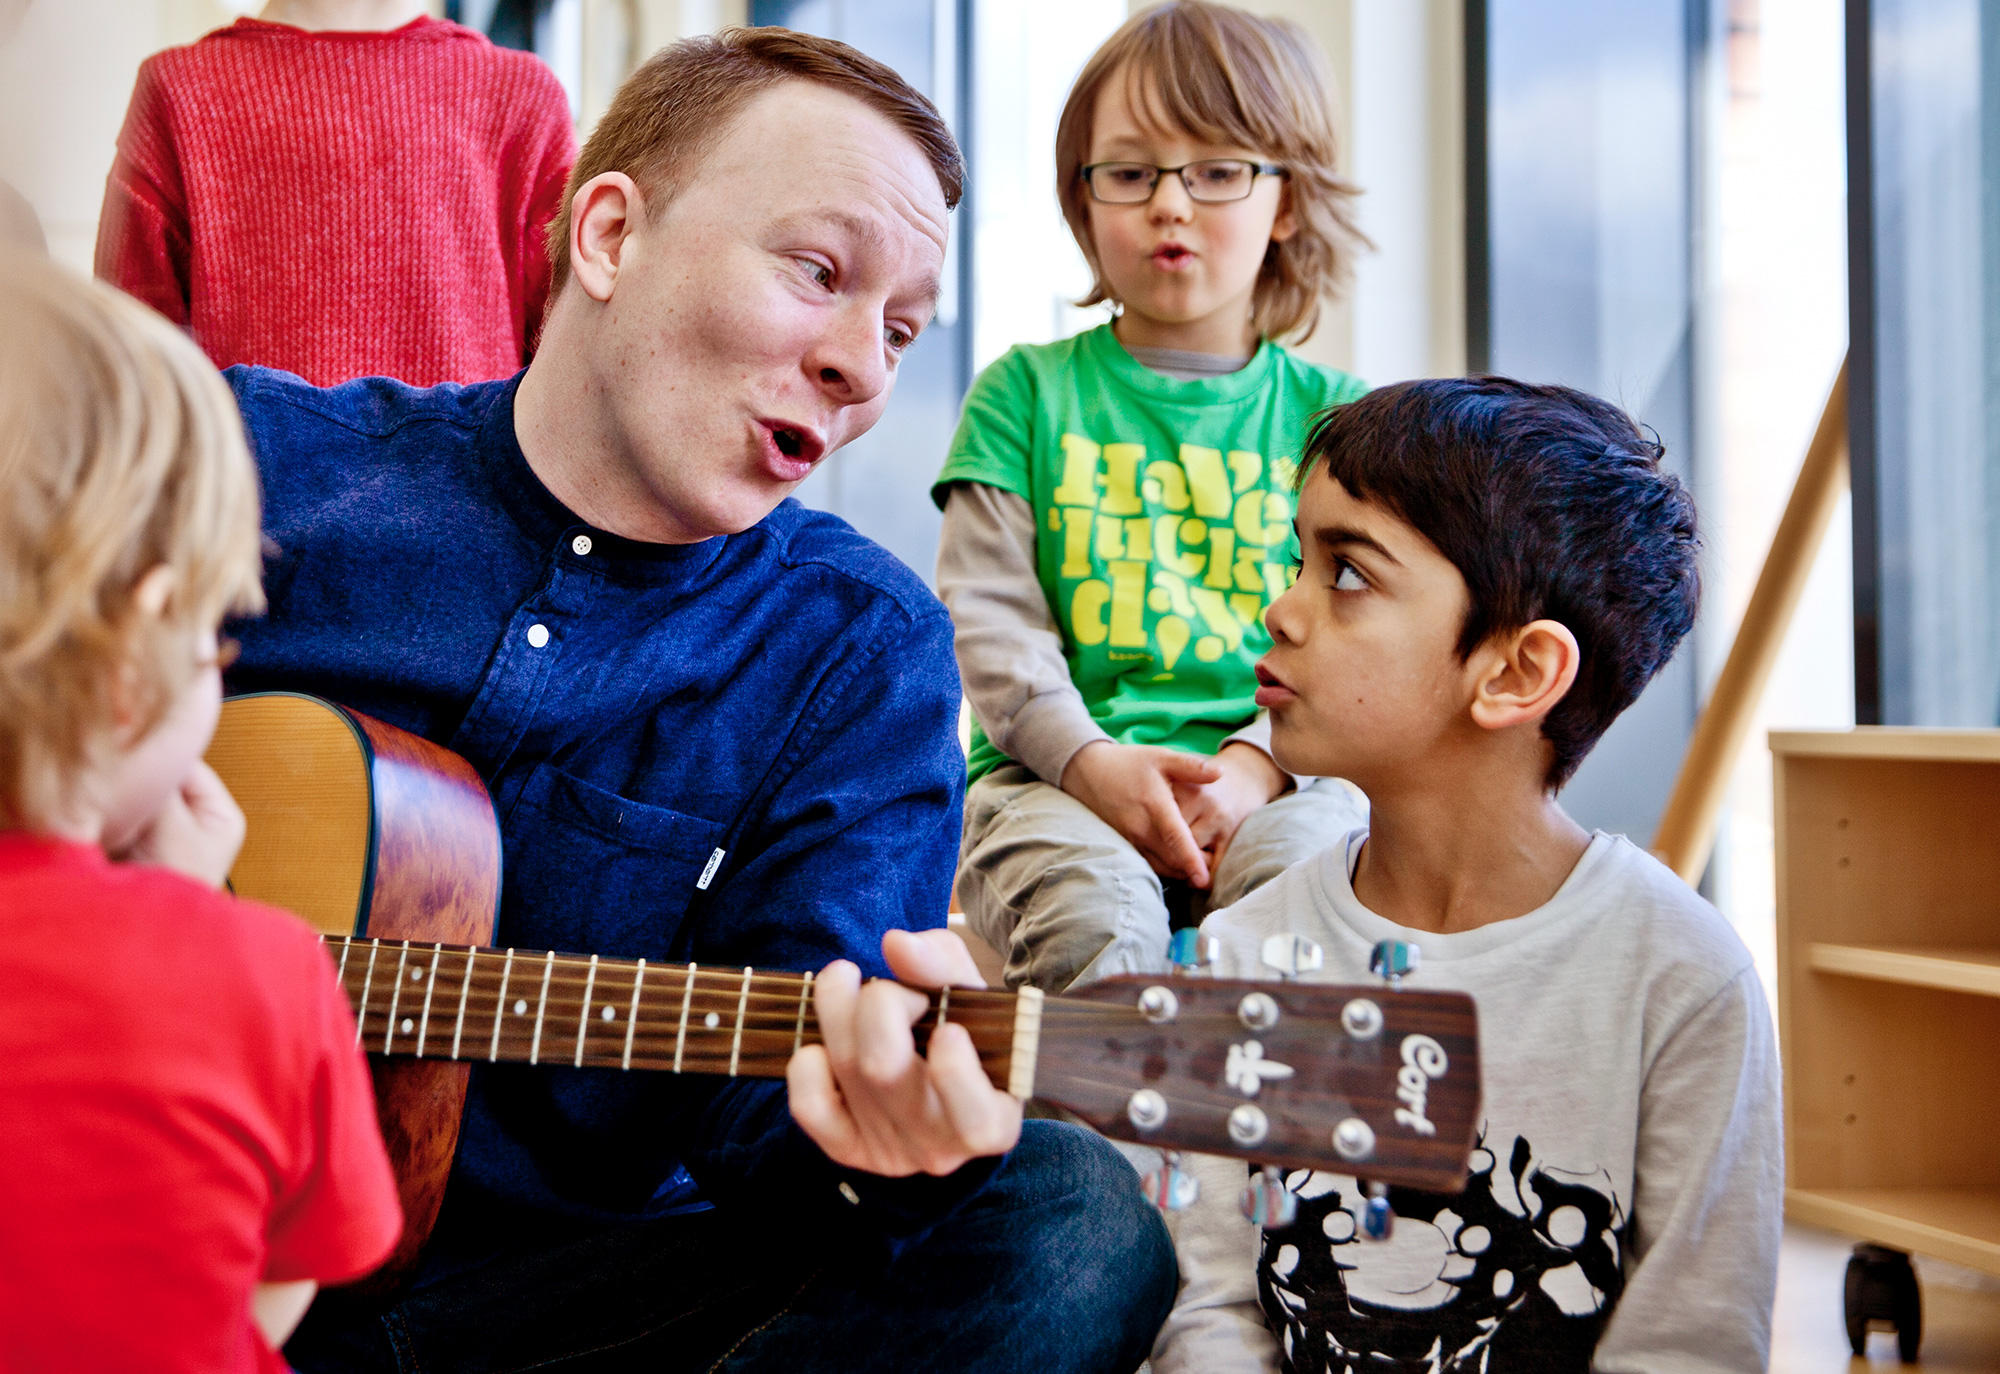 miteinander musik machen singen gitarre spielen lachen pme Familienservice Lernwelten Kita Kinderbetreuungseinrichtung Eltern und Kind